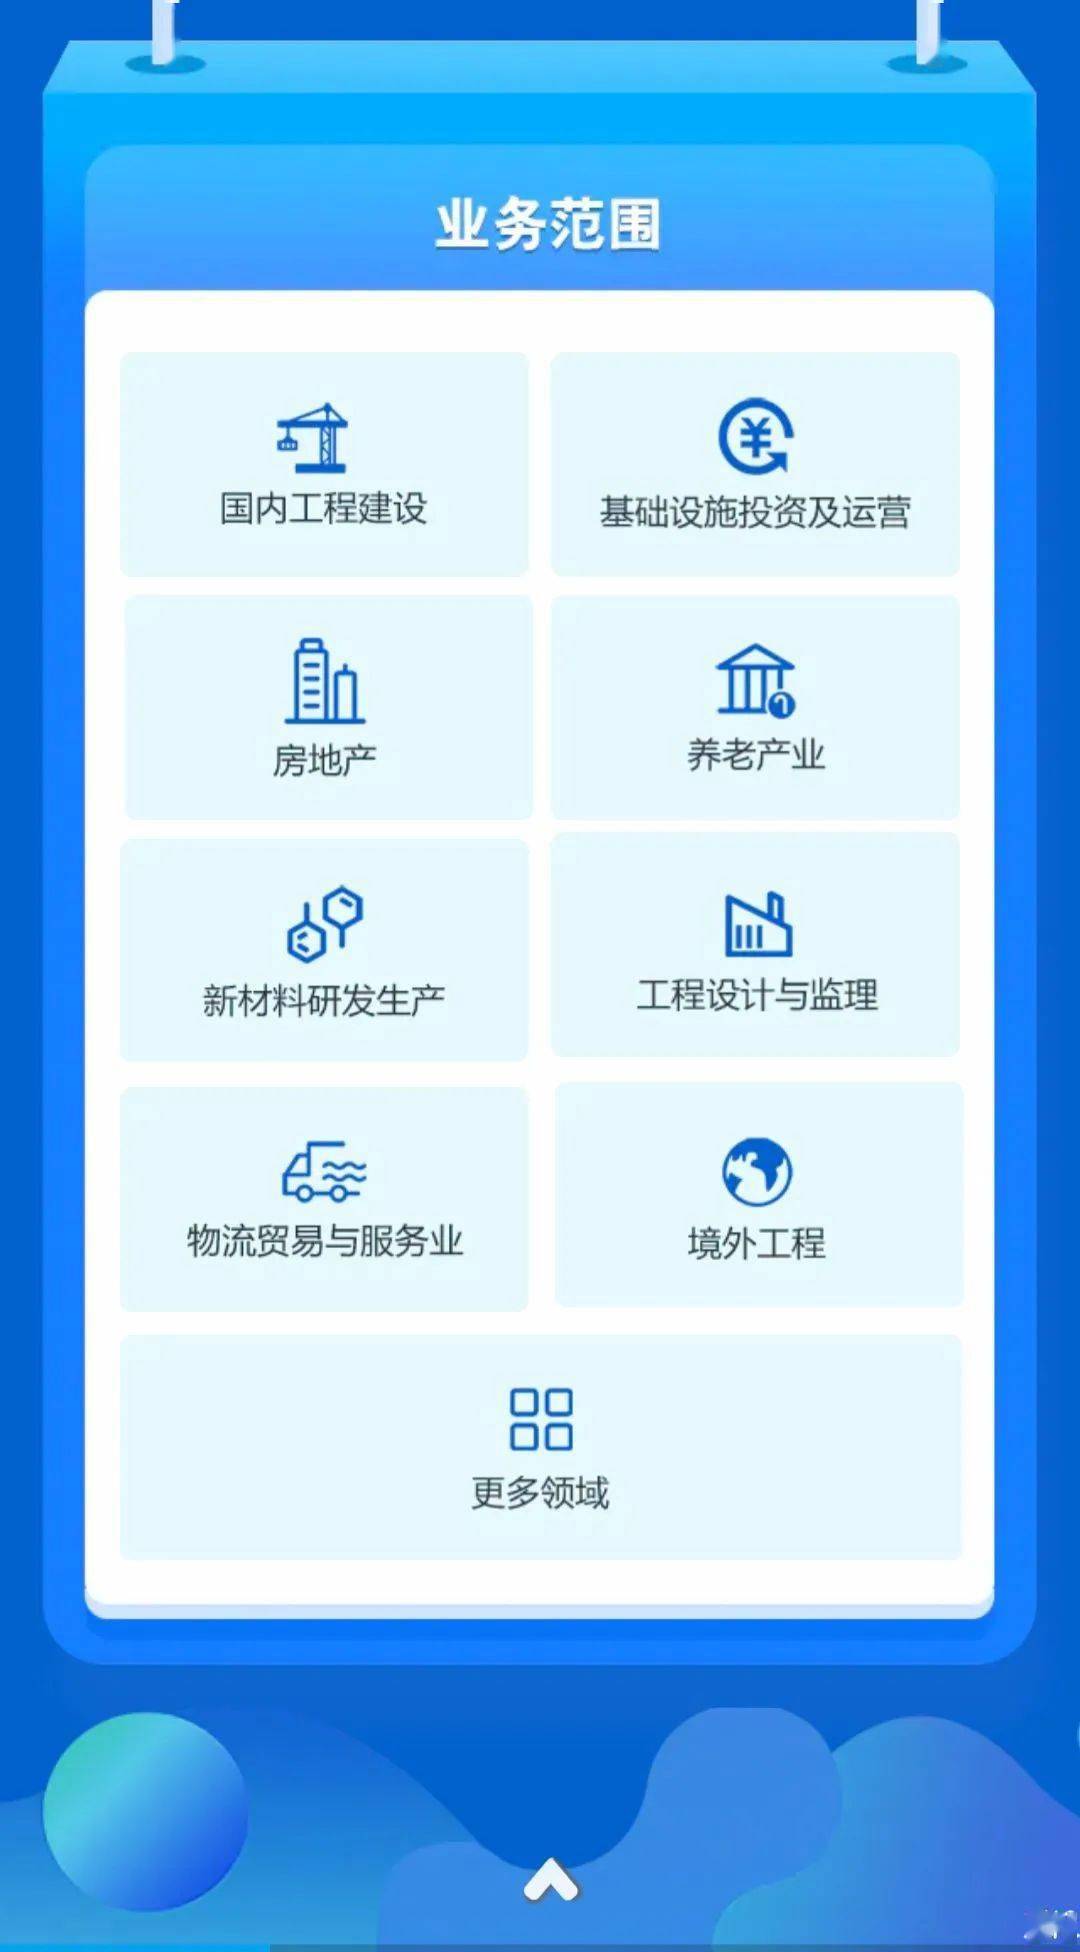 招聘快讯 | 筑青春 耀未来 -- 中铁四局2021